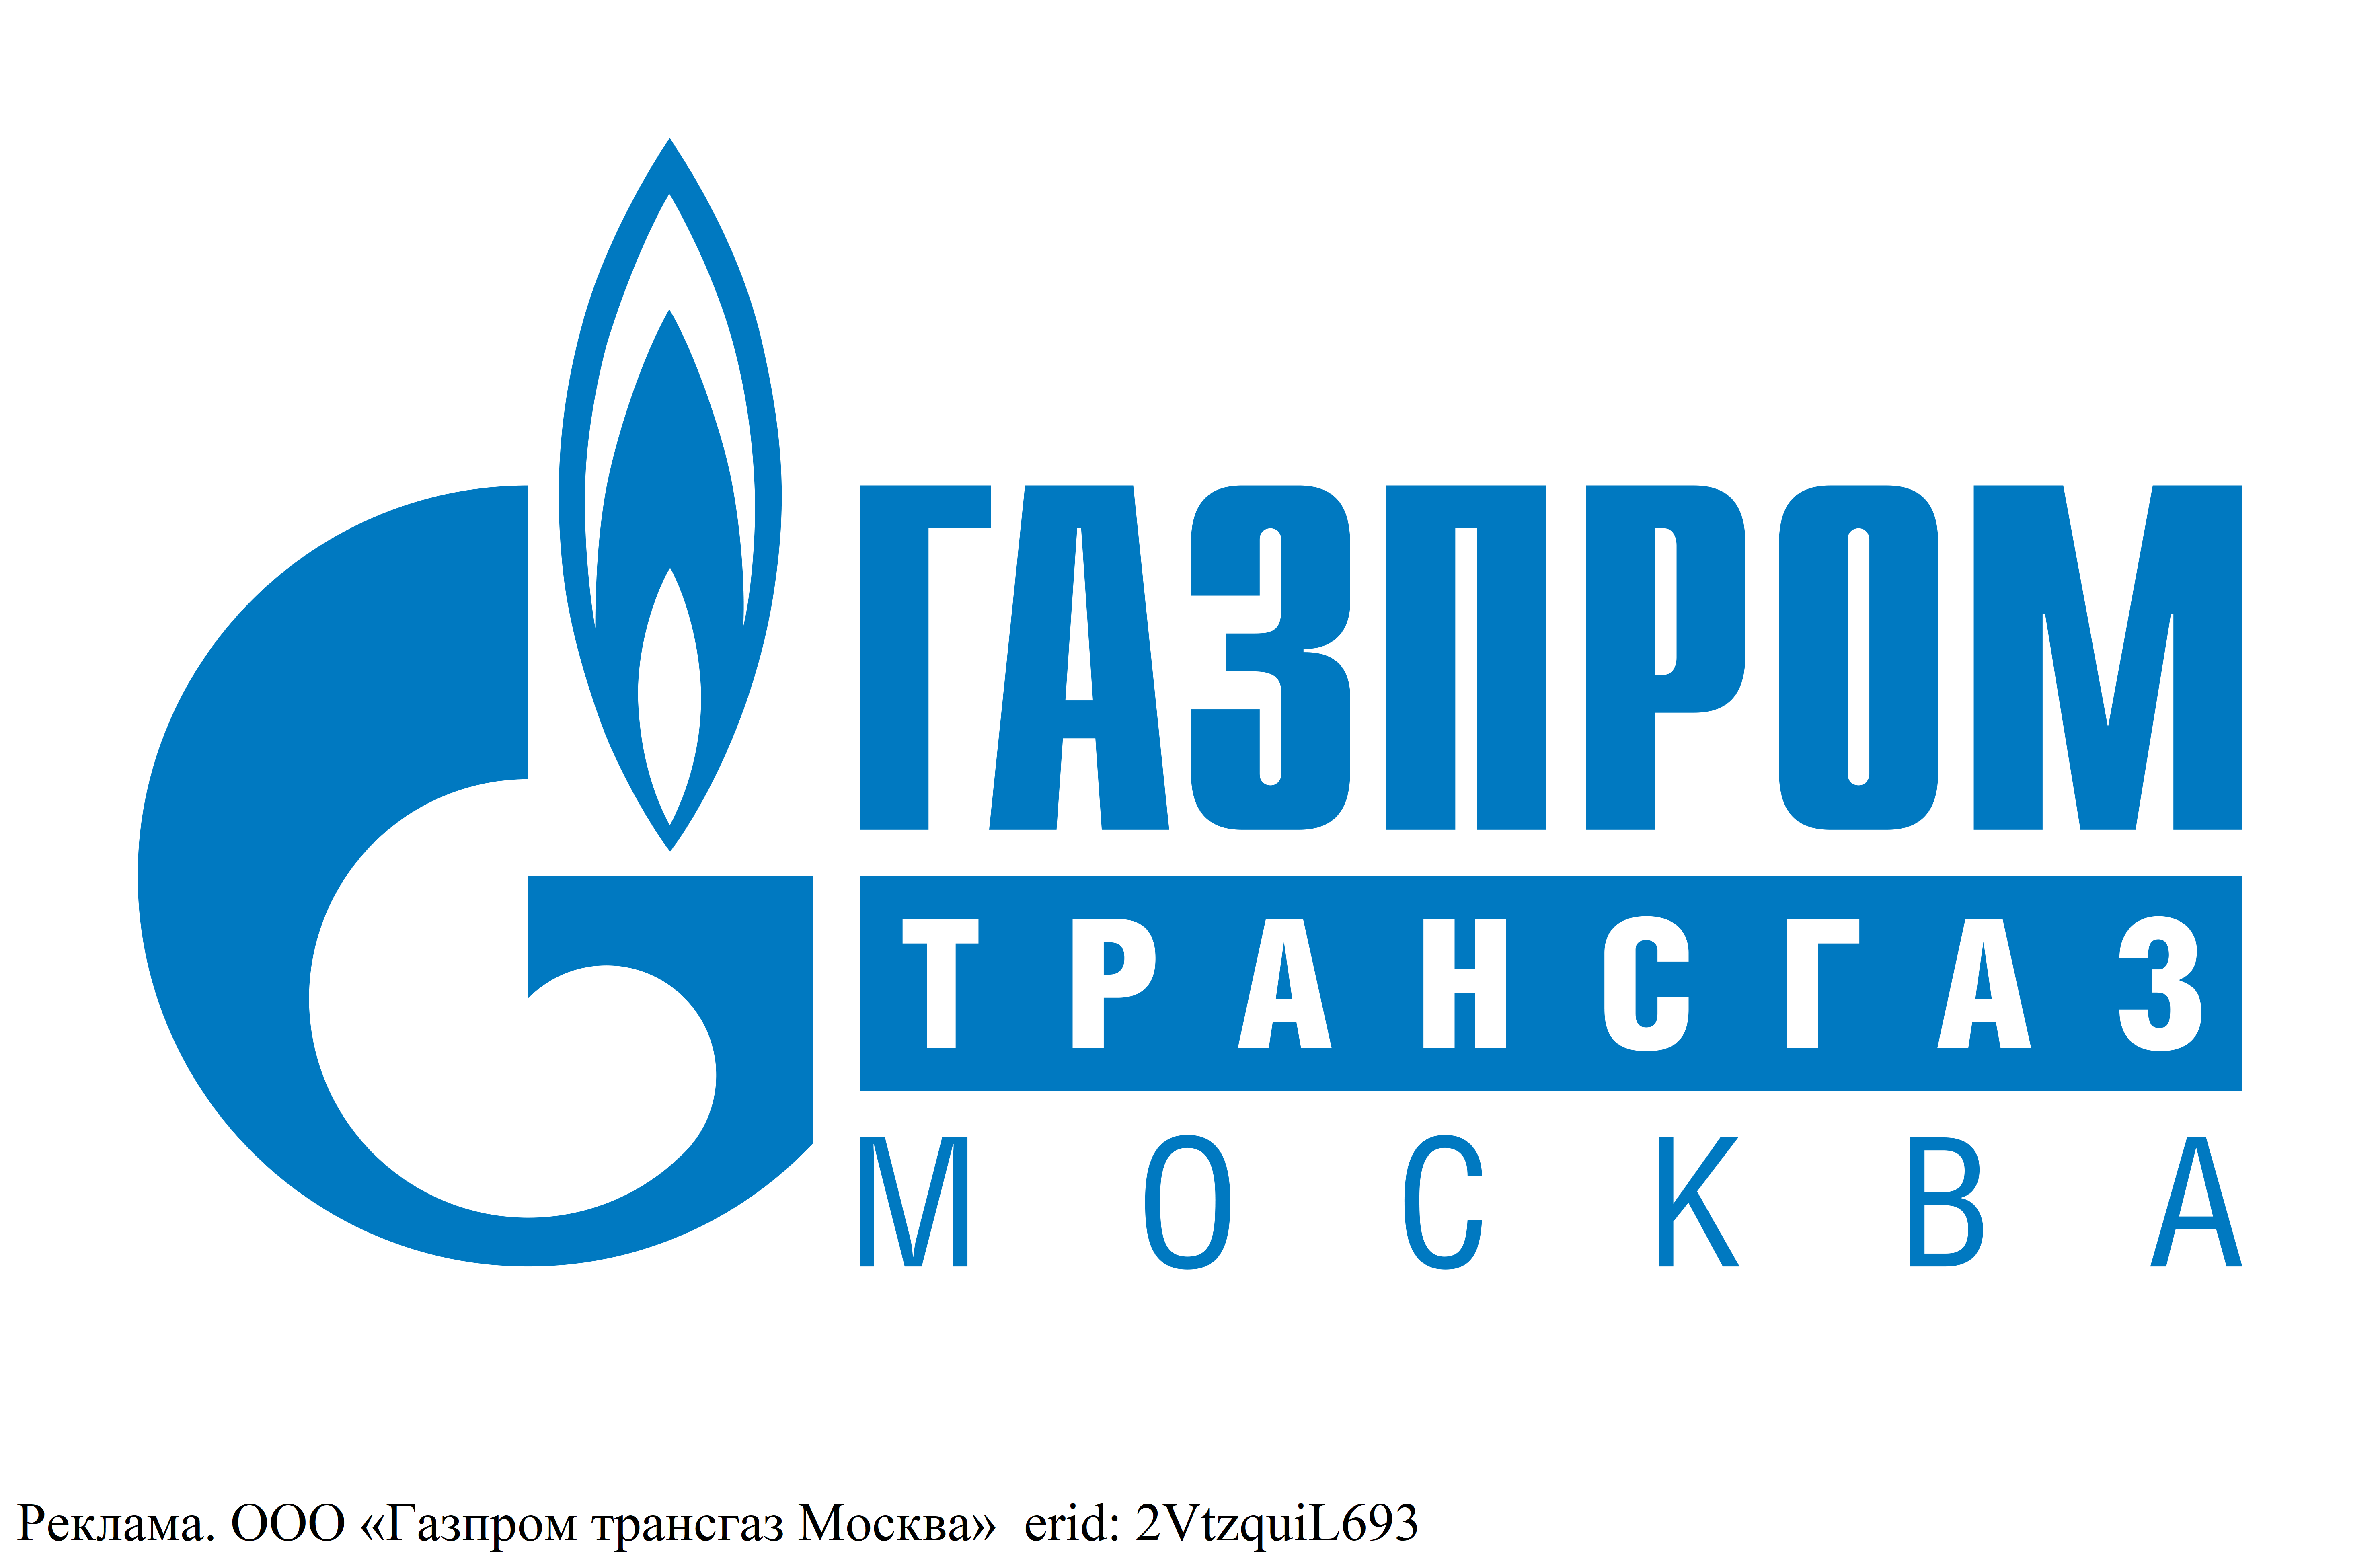 Реклама. ООО «Газпром трансгаз Москва»  erid: 2VtzquiL693